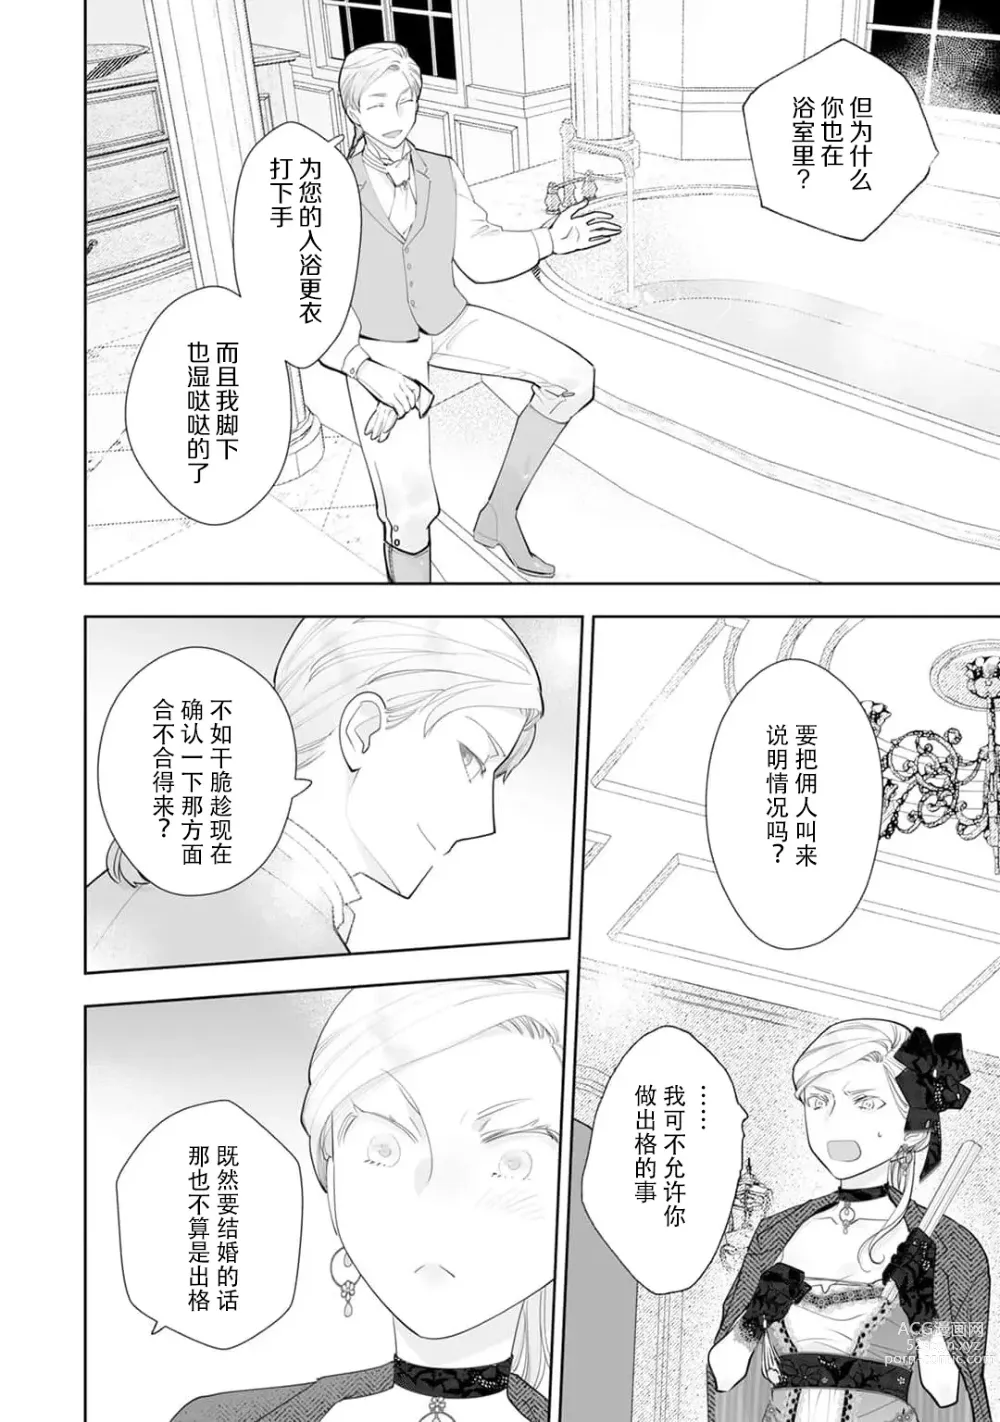 Page 16 of manga 被解除婚约的恶役千金，被帅哥资产家求婚了。 1-4